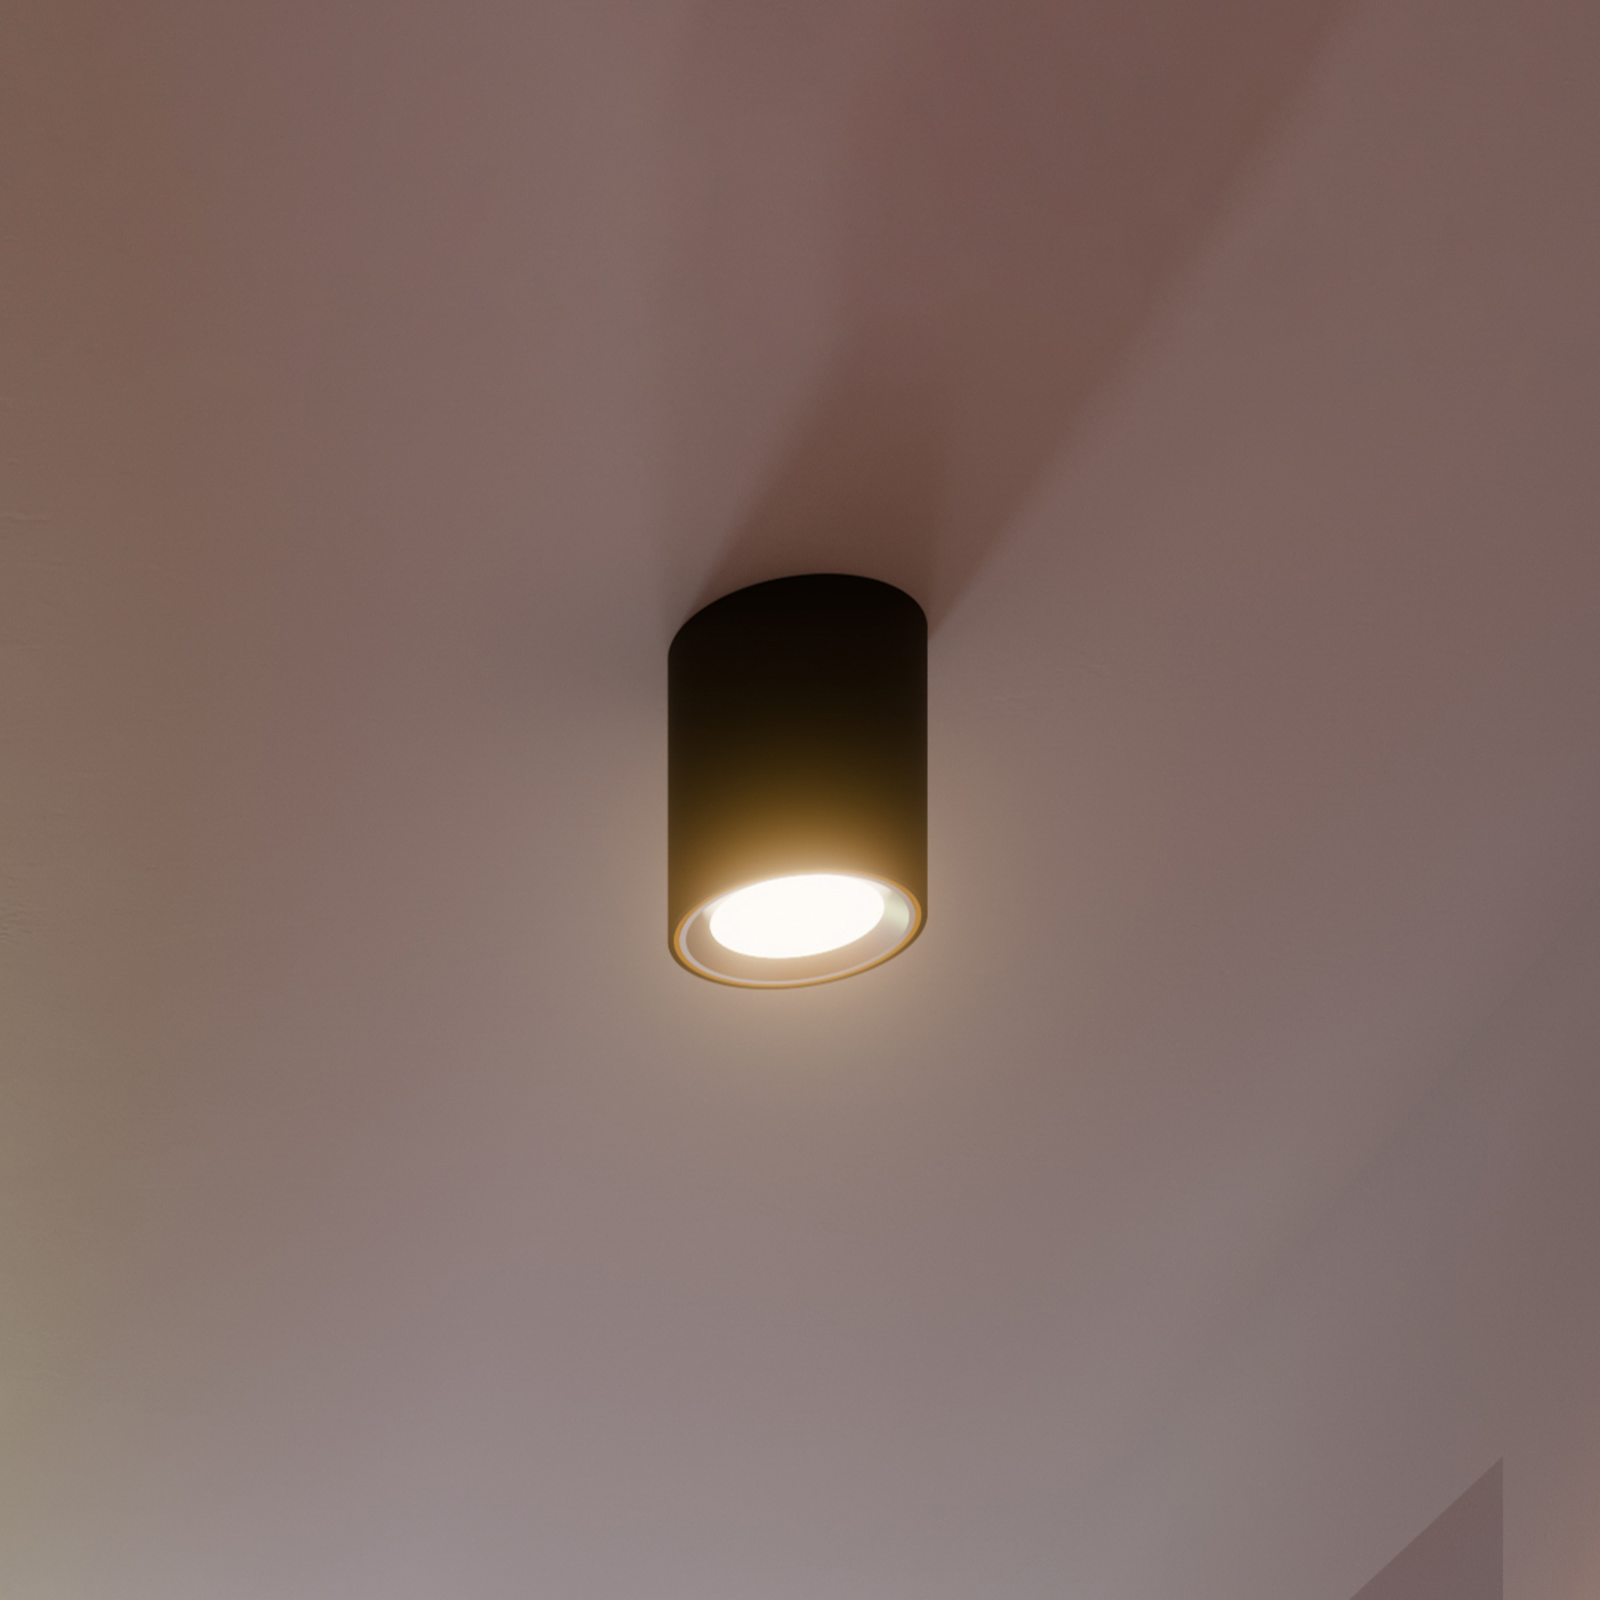 LED-Deckenspot Landon Smart, schwarz, Höhe 14 cm